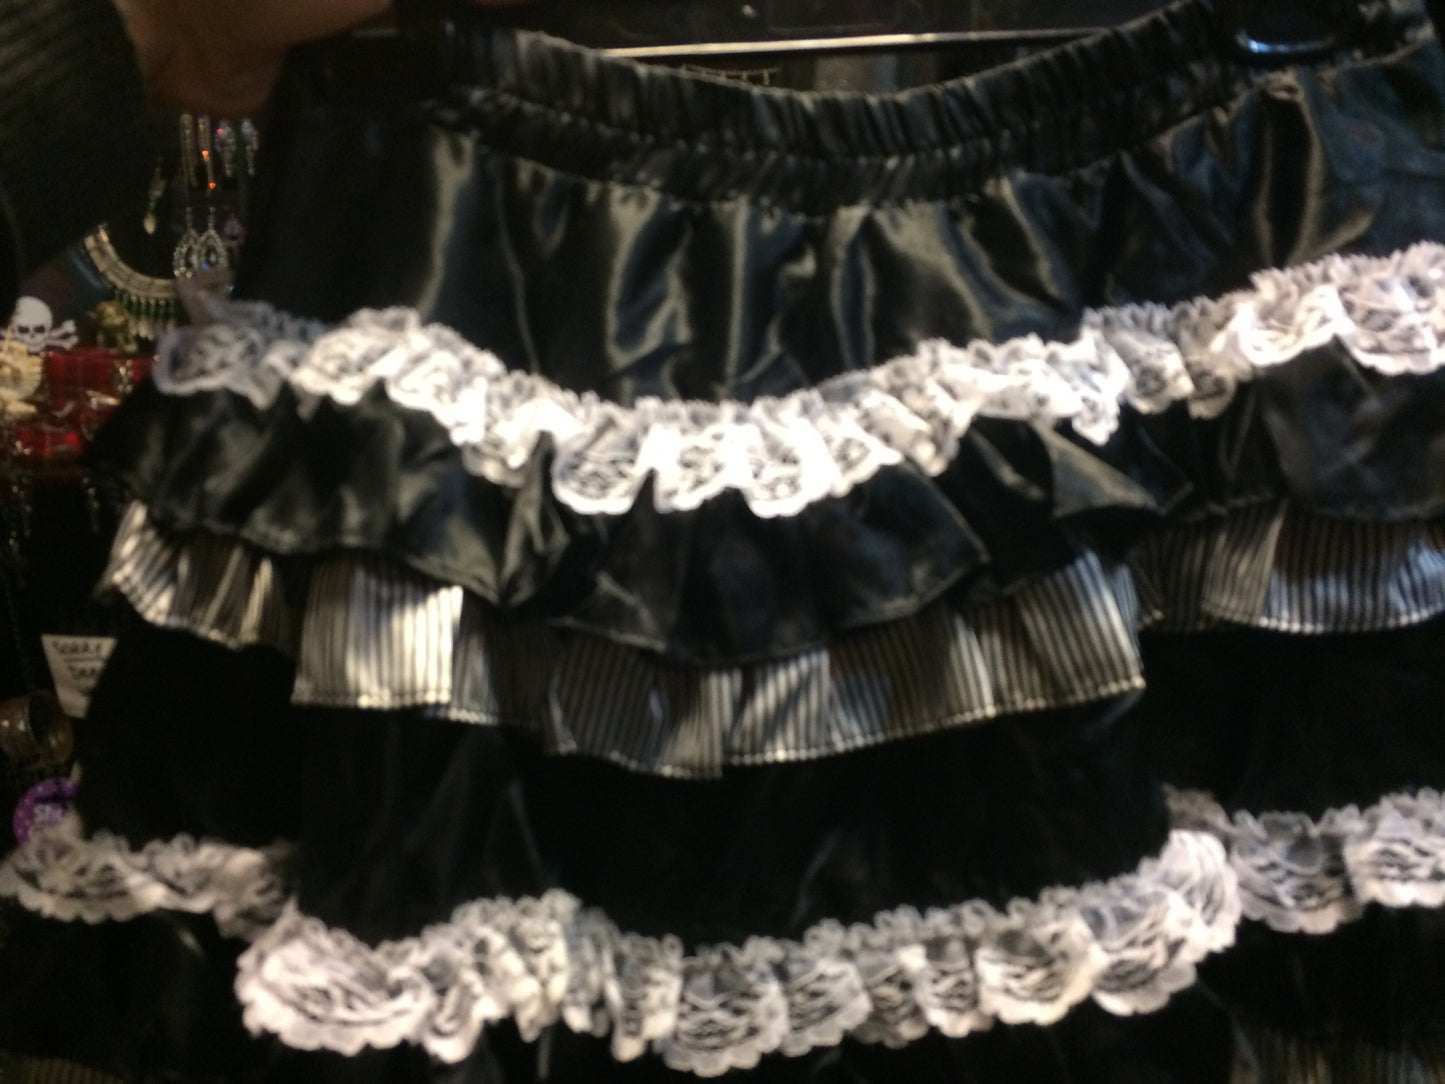 Black and white skirt